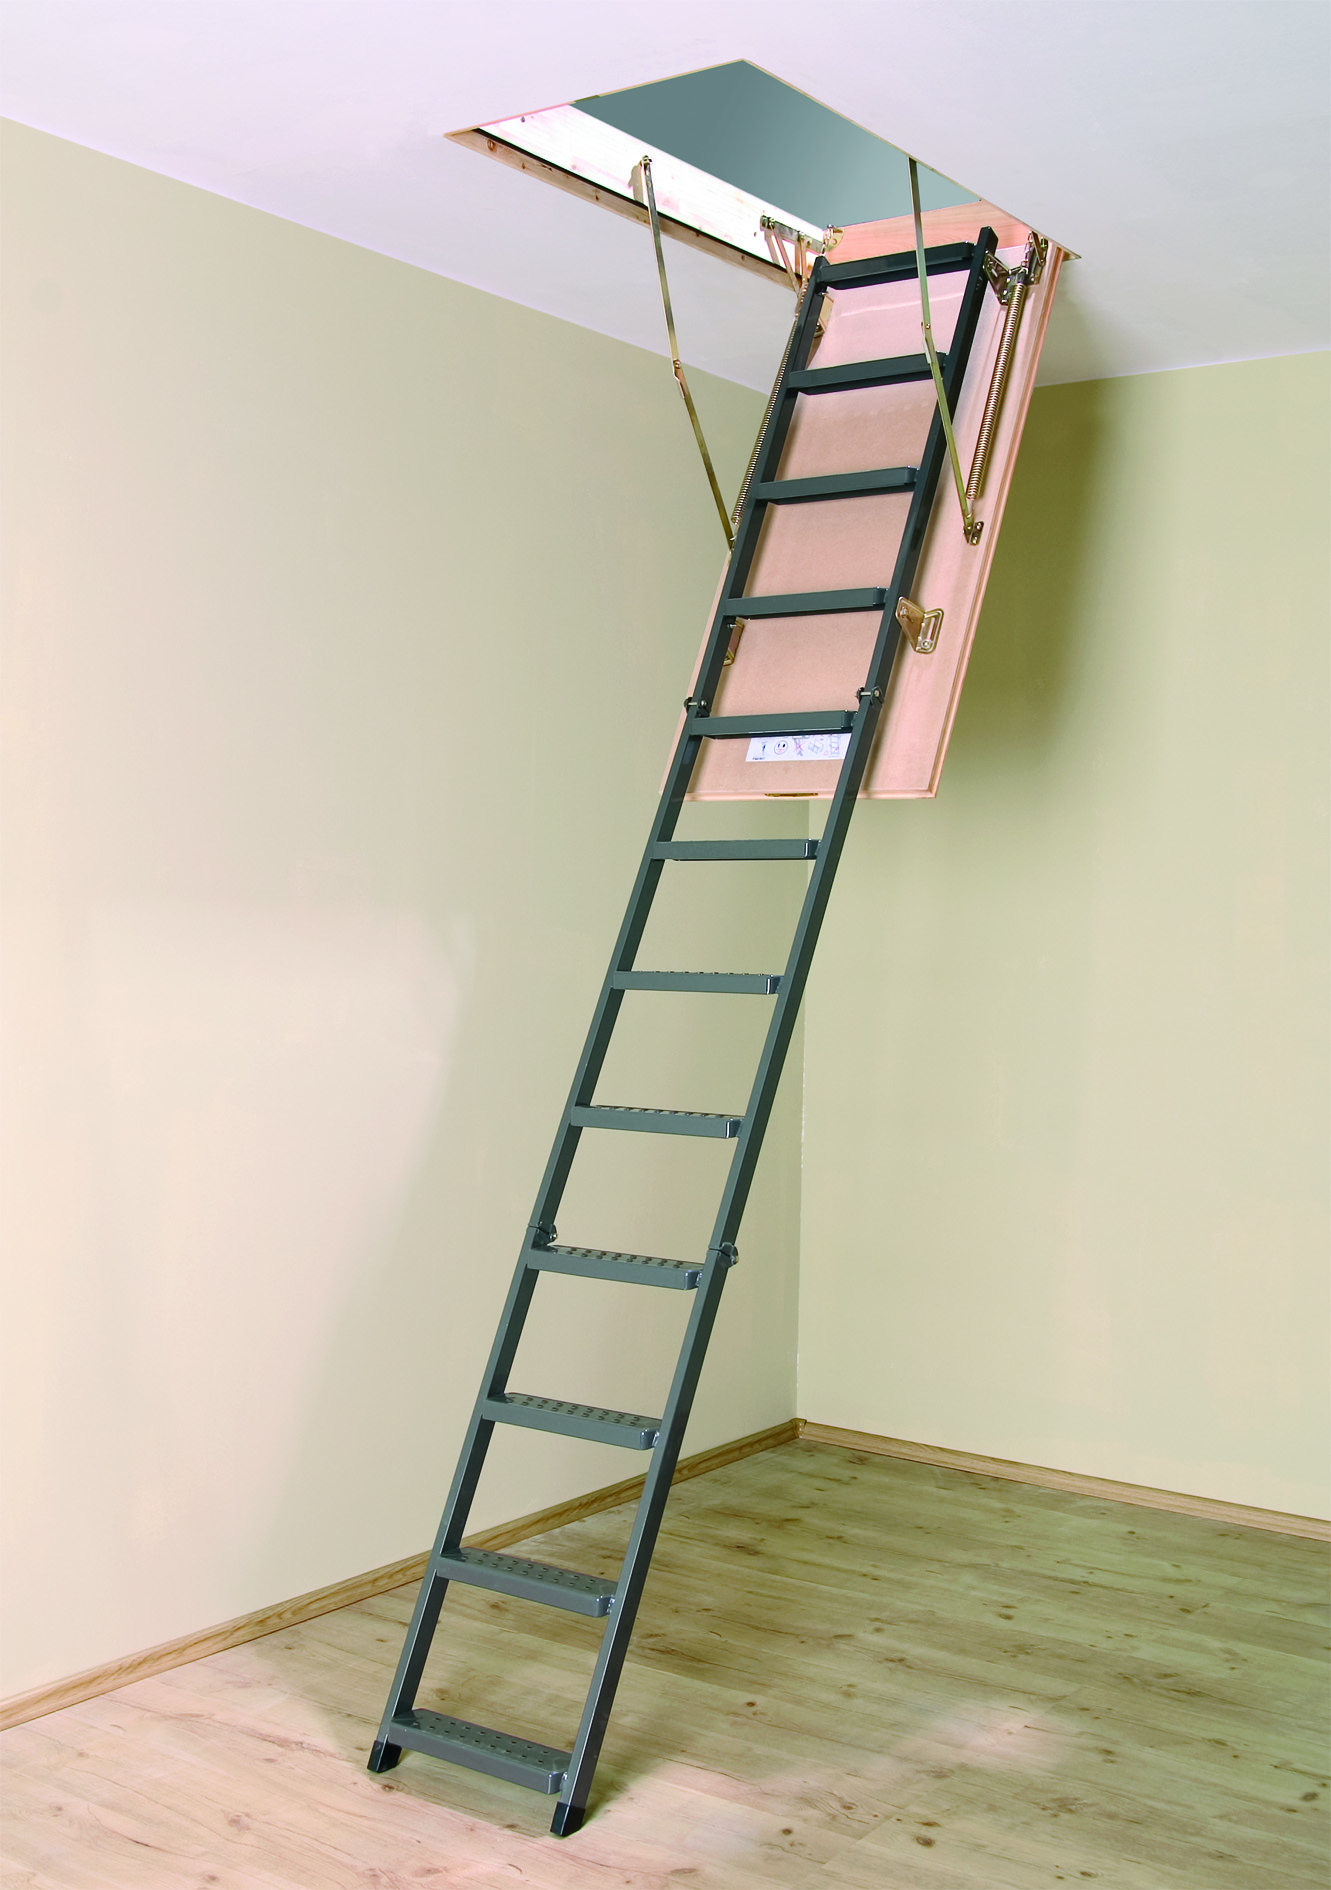 Чердачные люки: Деревянные чердачные лестницы для дома Fakro, характеристики, цены